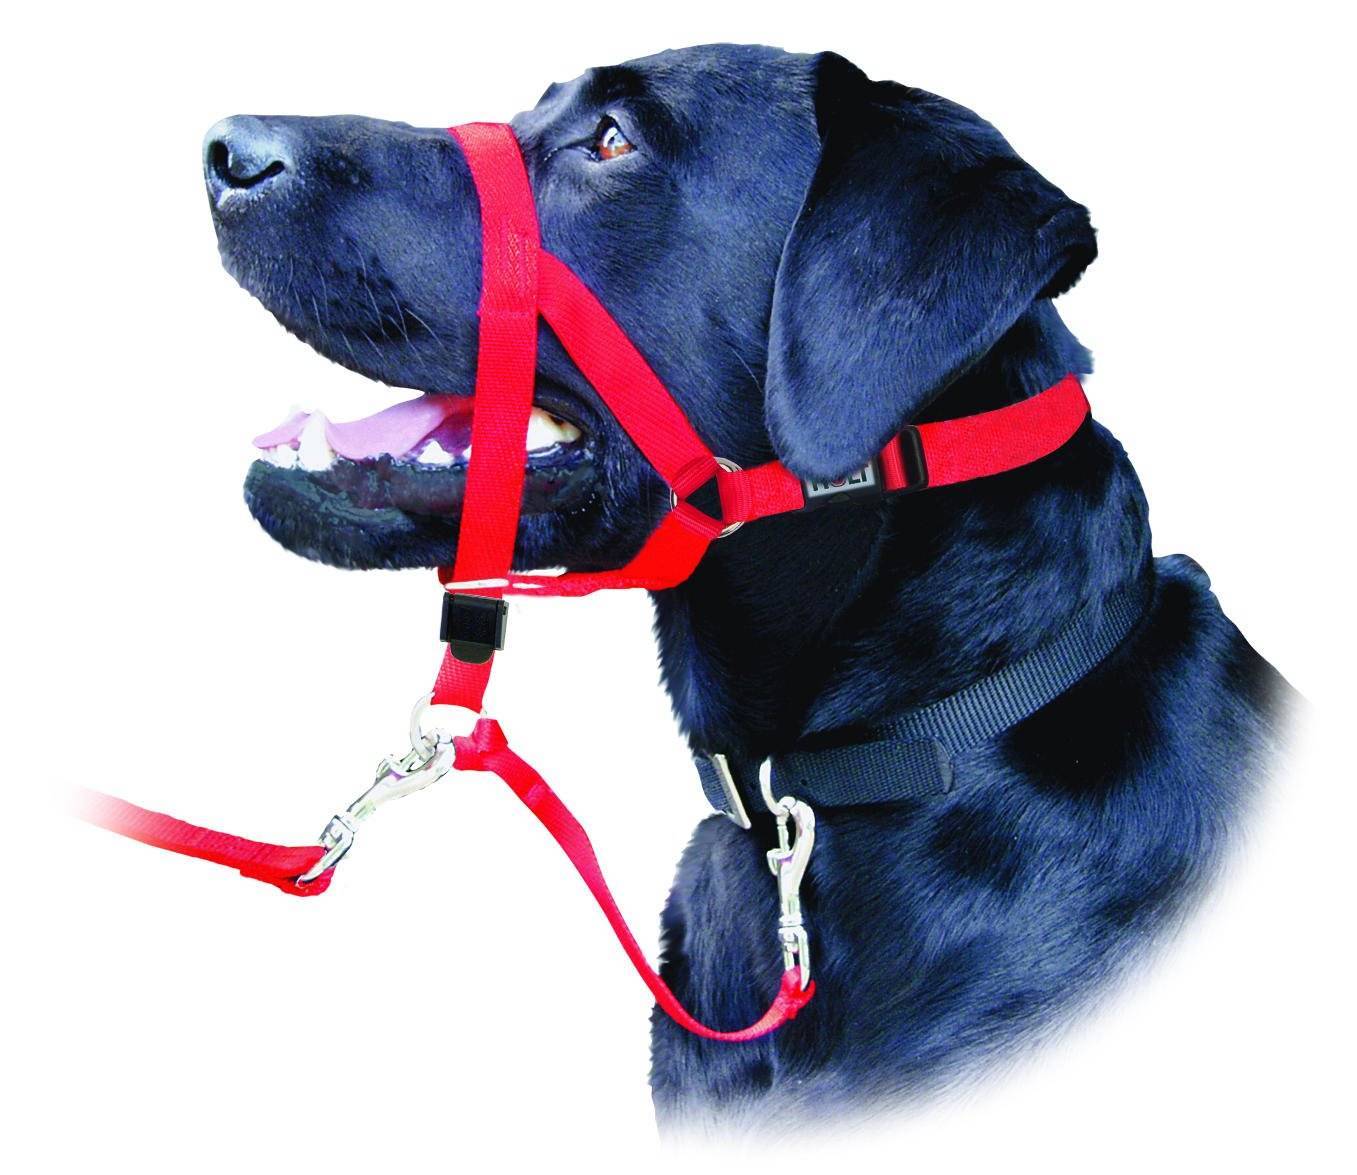 Шлейка для хаски или ошейник: что лучше для собаки и можно ли использовать электроошейник для домашнего питомца